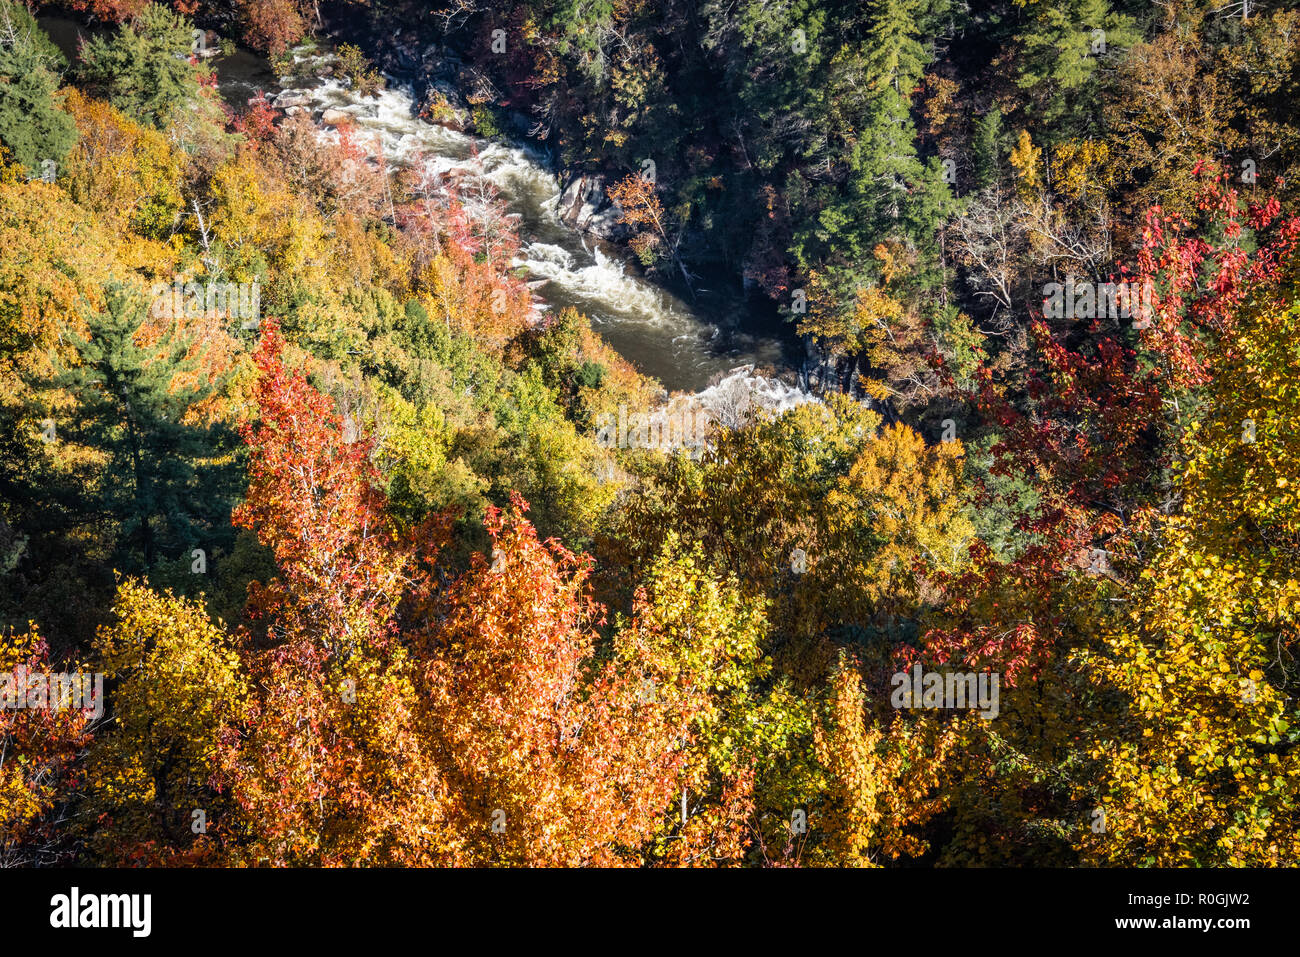 Feuillage d'automne cadres la rage de l'eau Rivière Tallulah lors d'une sortie en eau vive au parc national des Gorges de Tallulah dans le nord-est de la Géorgie. (USA) Banque D'Images